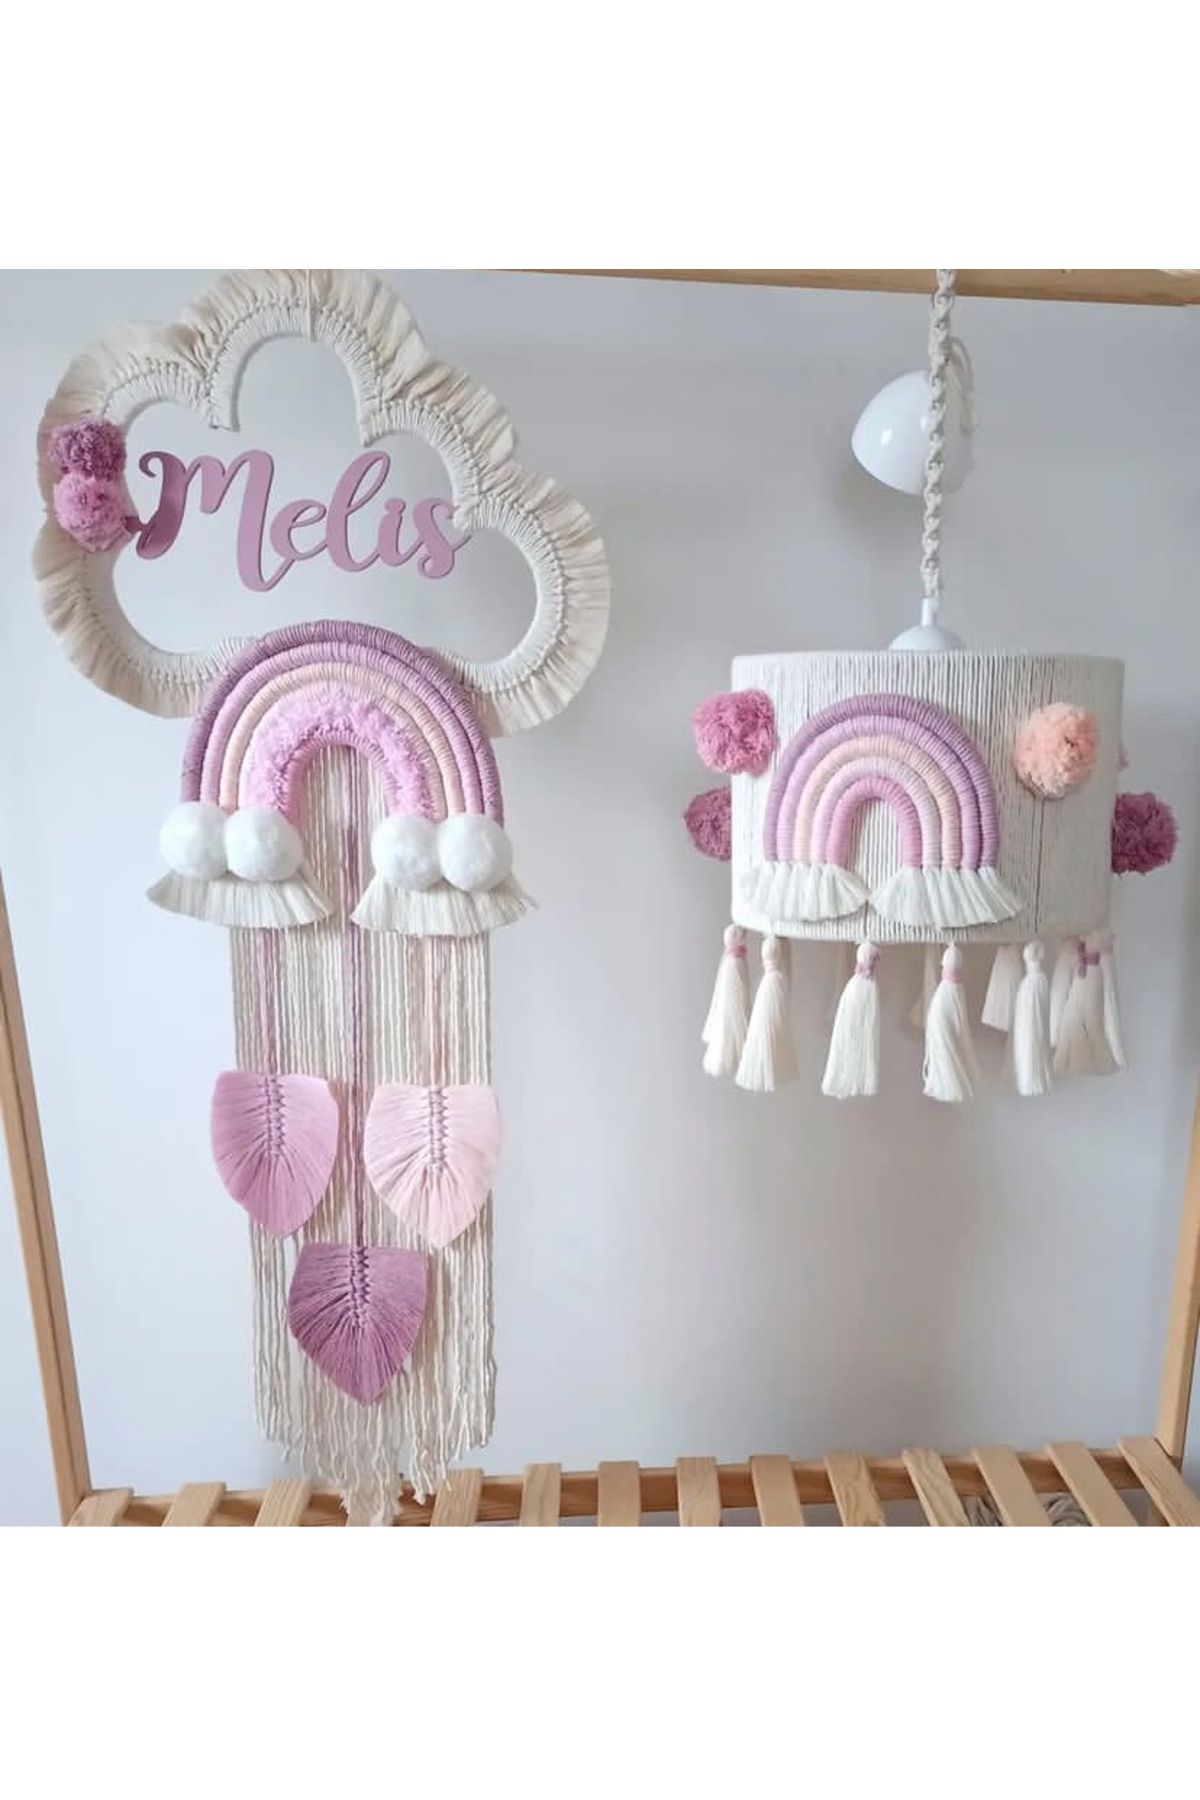 Tasarı Sanatı Bebek / Çocuk Odası Özel Tasarım Kız-Erkek Bebek Odası Avize Abajur (AHŞAP AYAKTIR) Seti